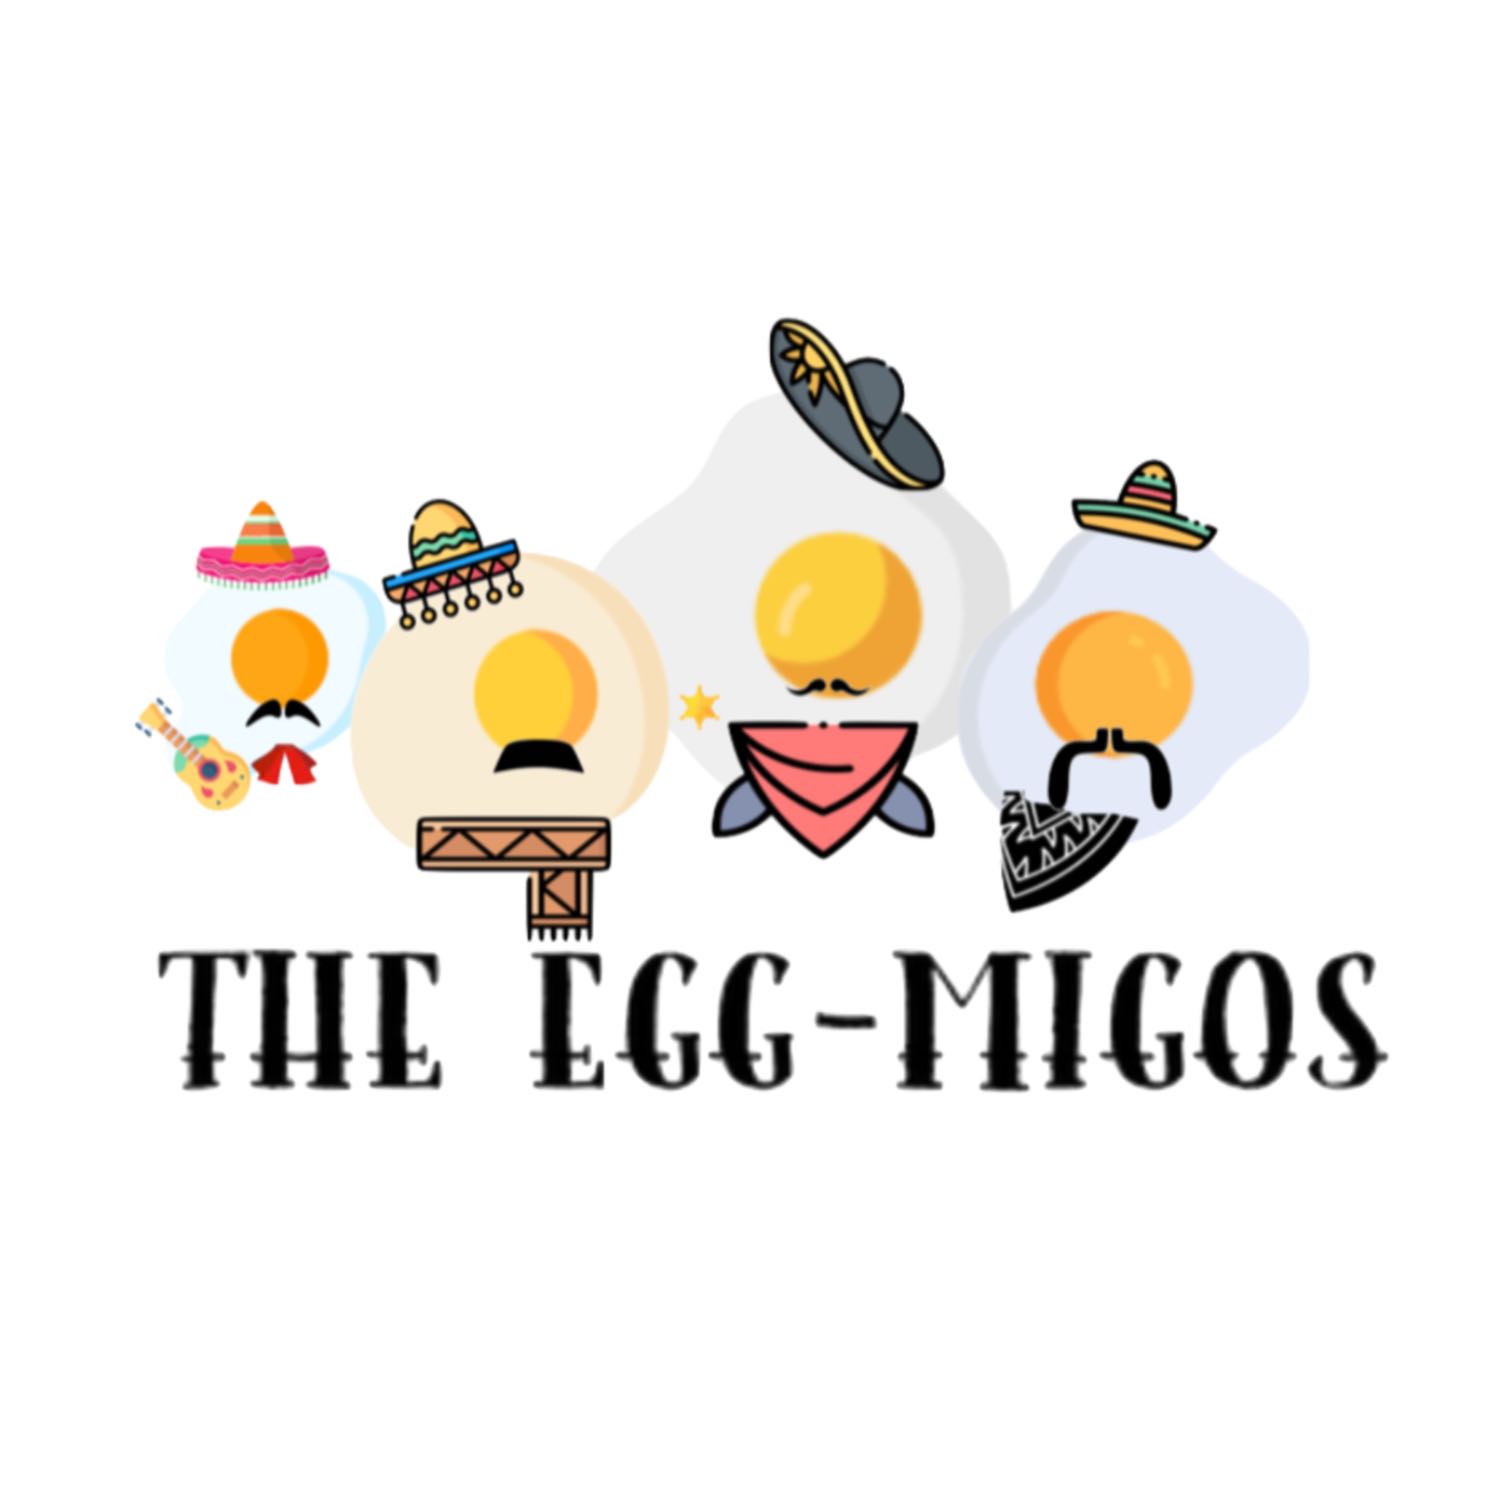 The Egg-Migos